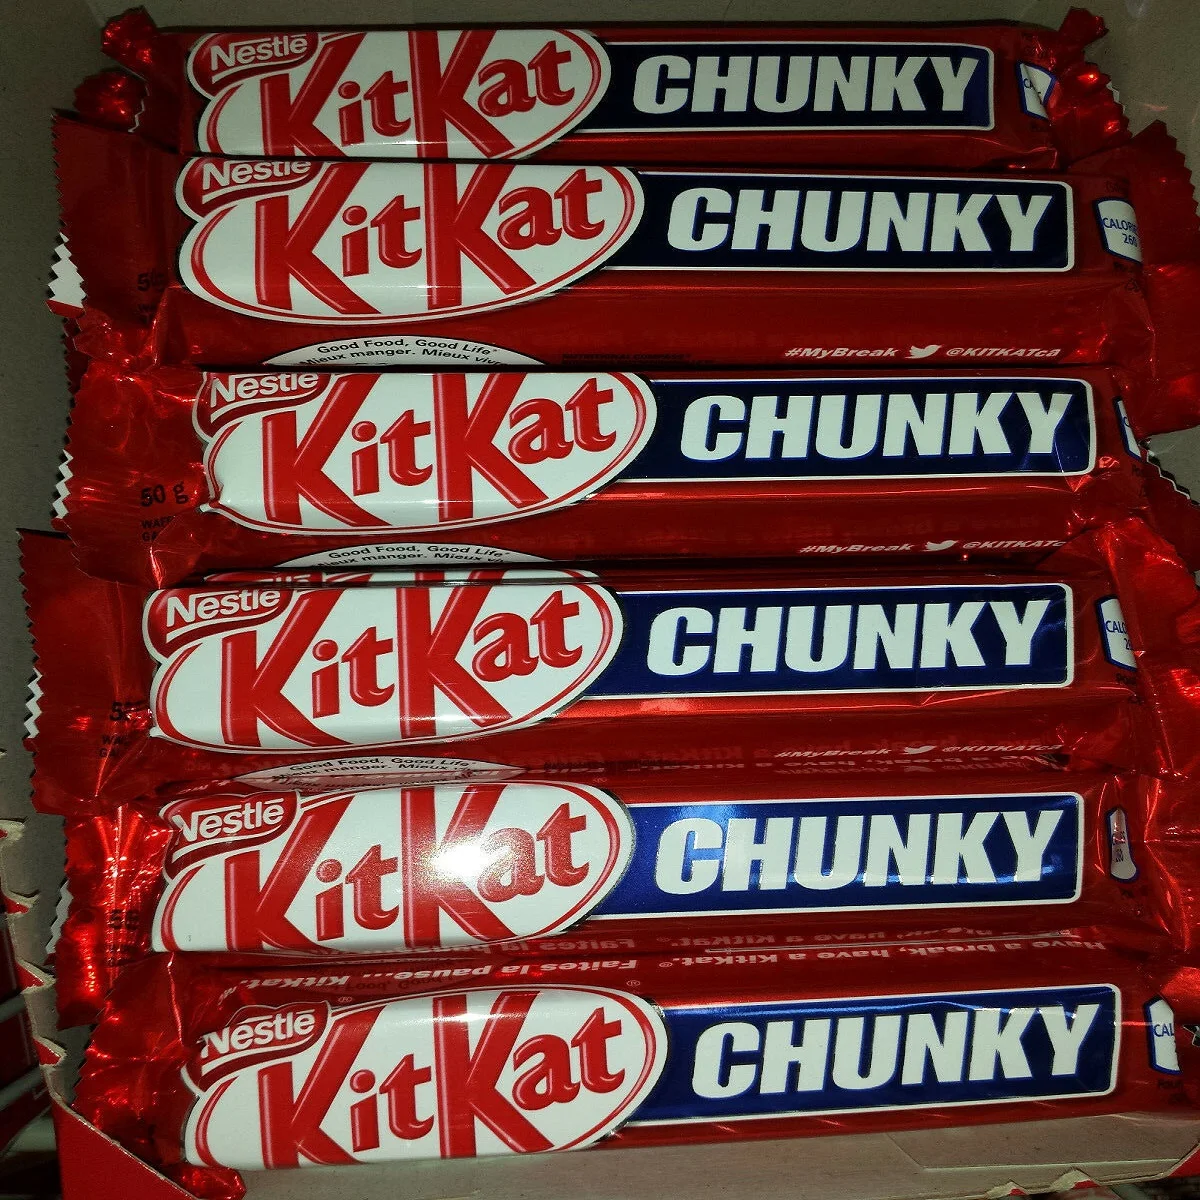 Nestle Kitkat Chunky Peanut Butter - Buy Nestle Kitkat Chunky Price ...